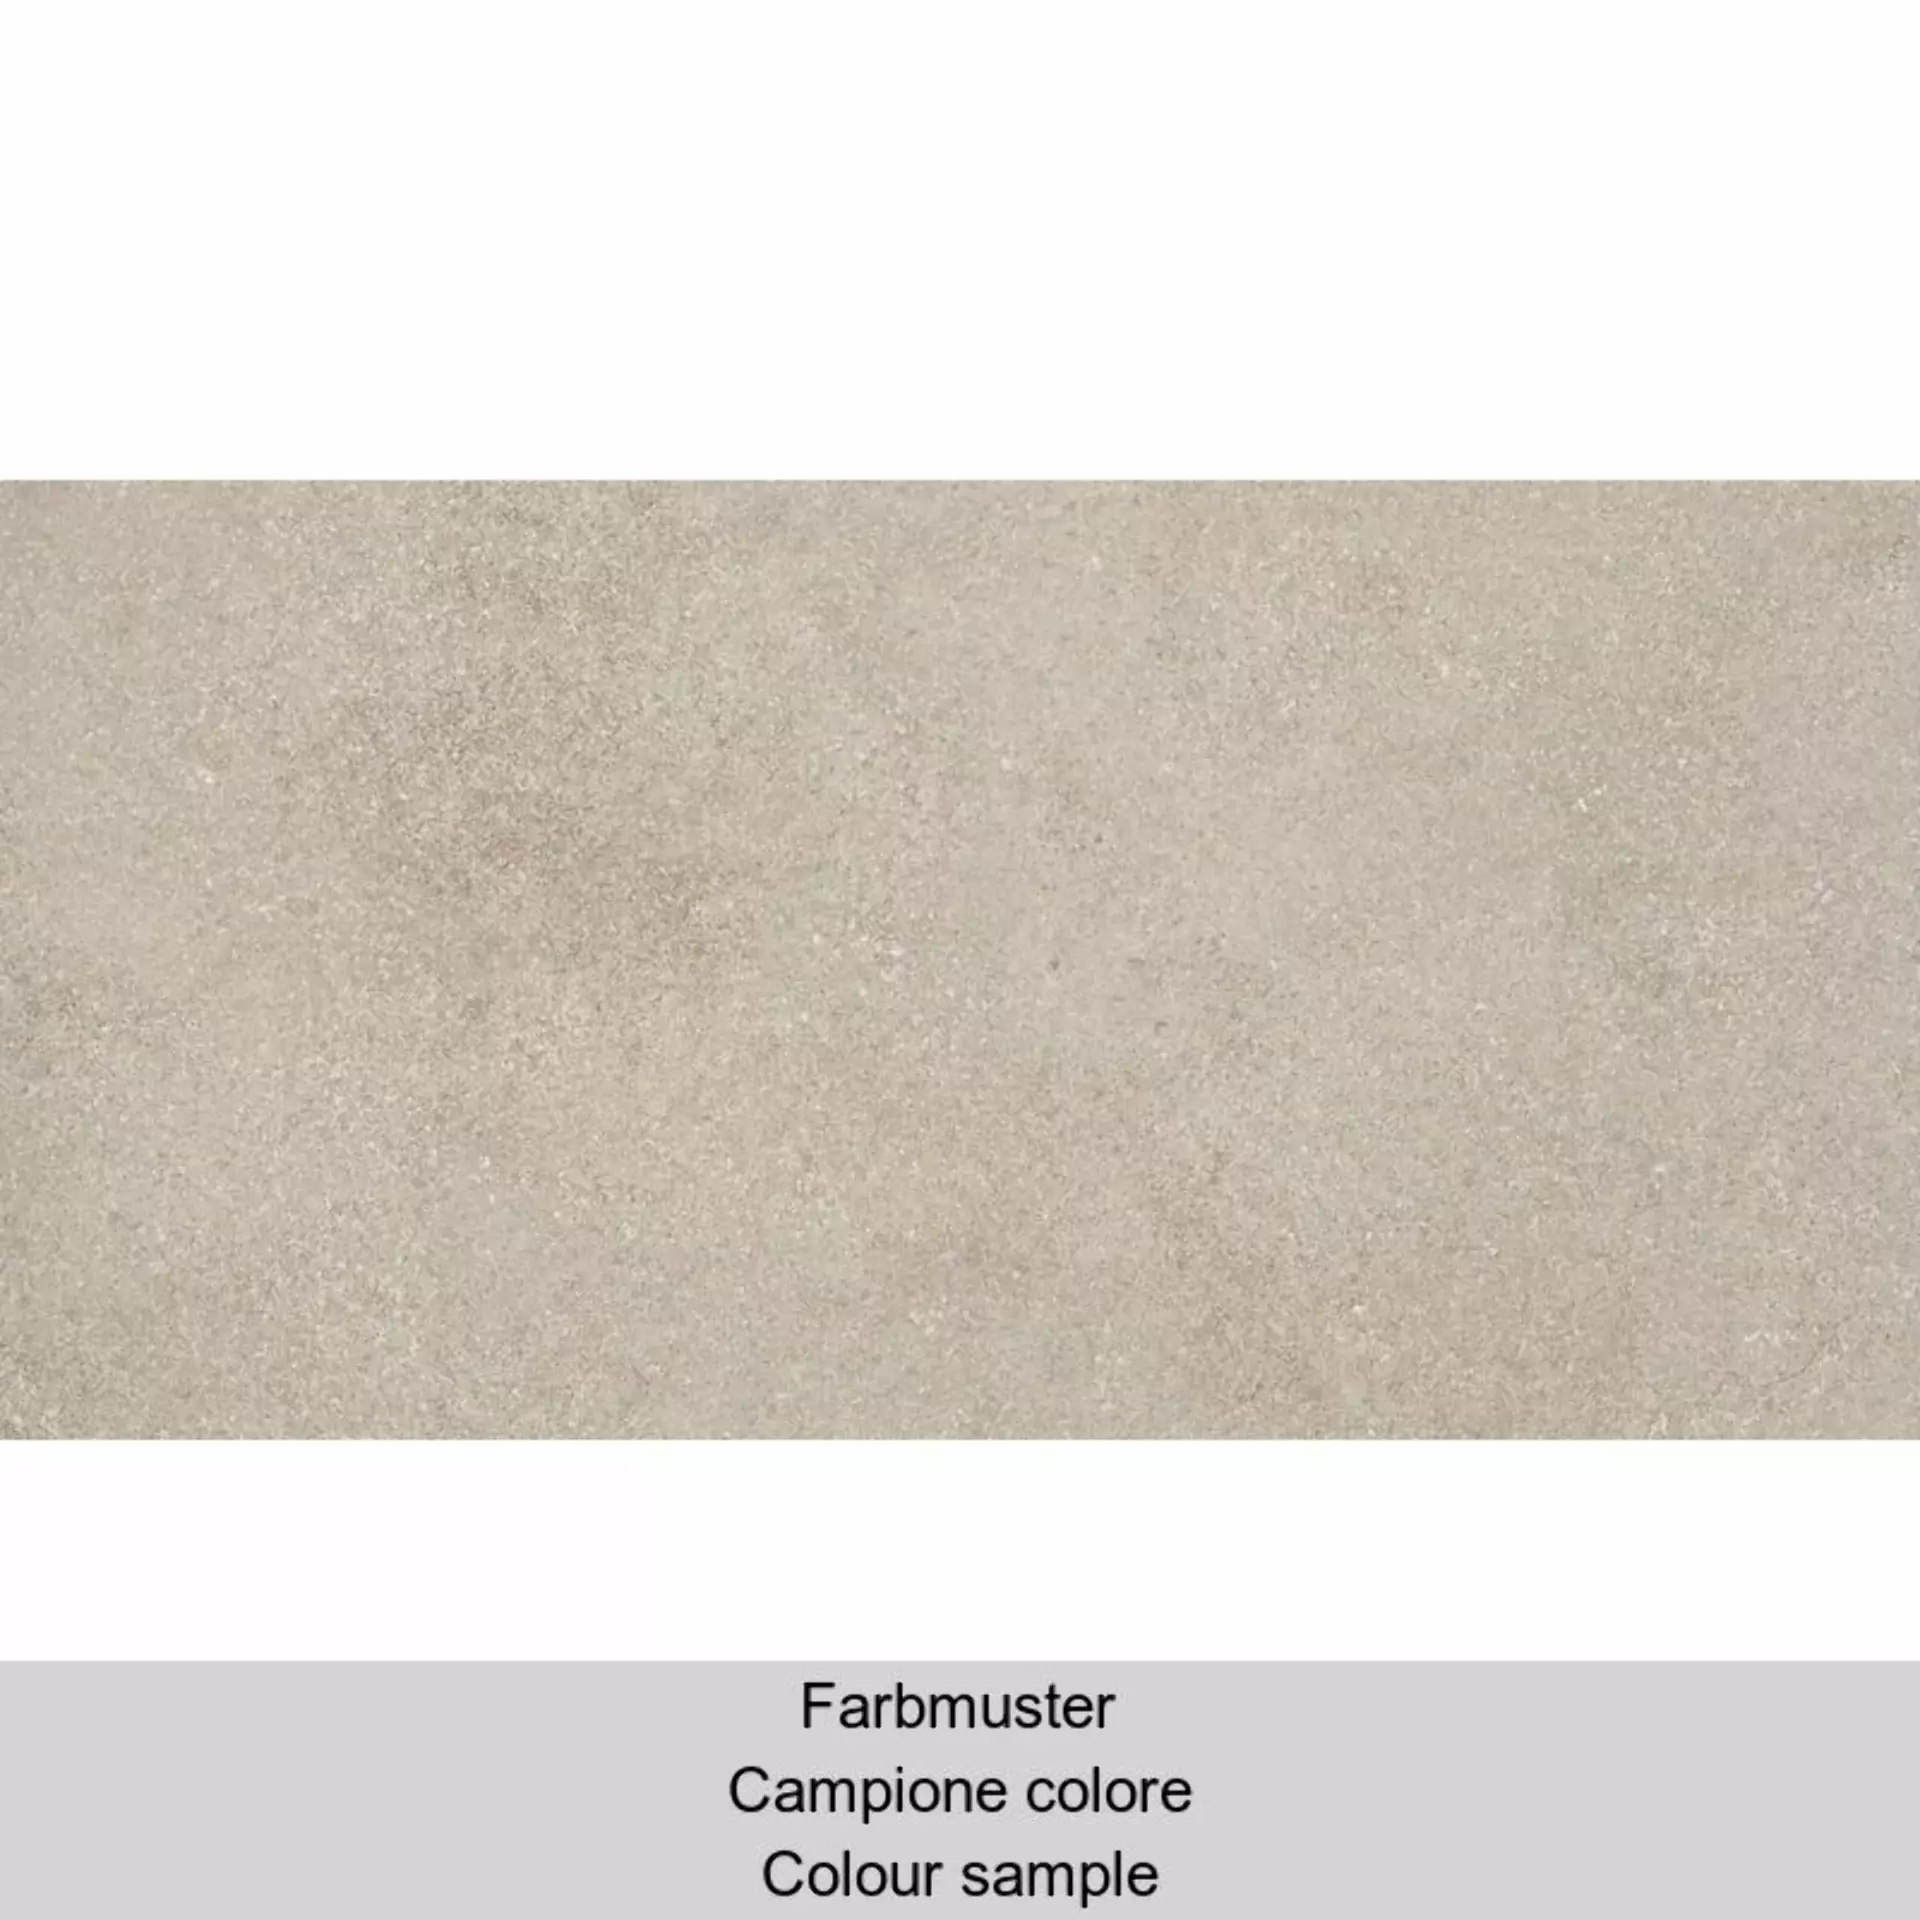 Casalgrande Eco Concrete Beige Naturale – Matt 10790153 30x60cm rectified 8mm